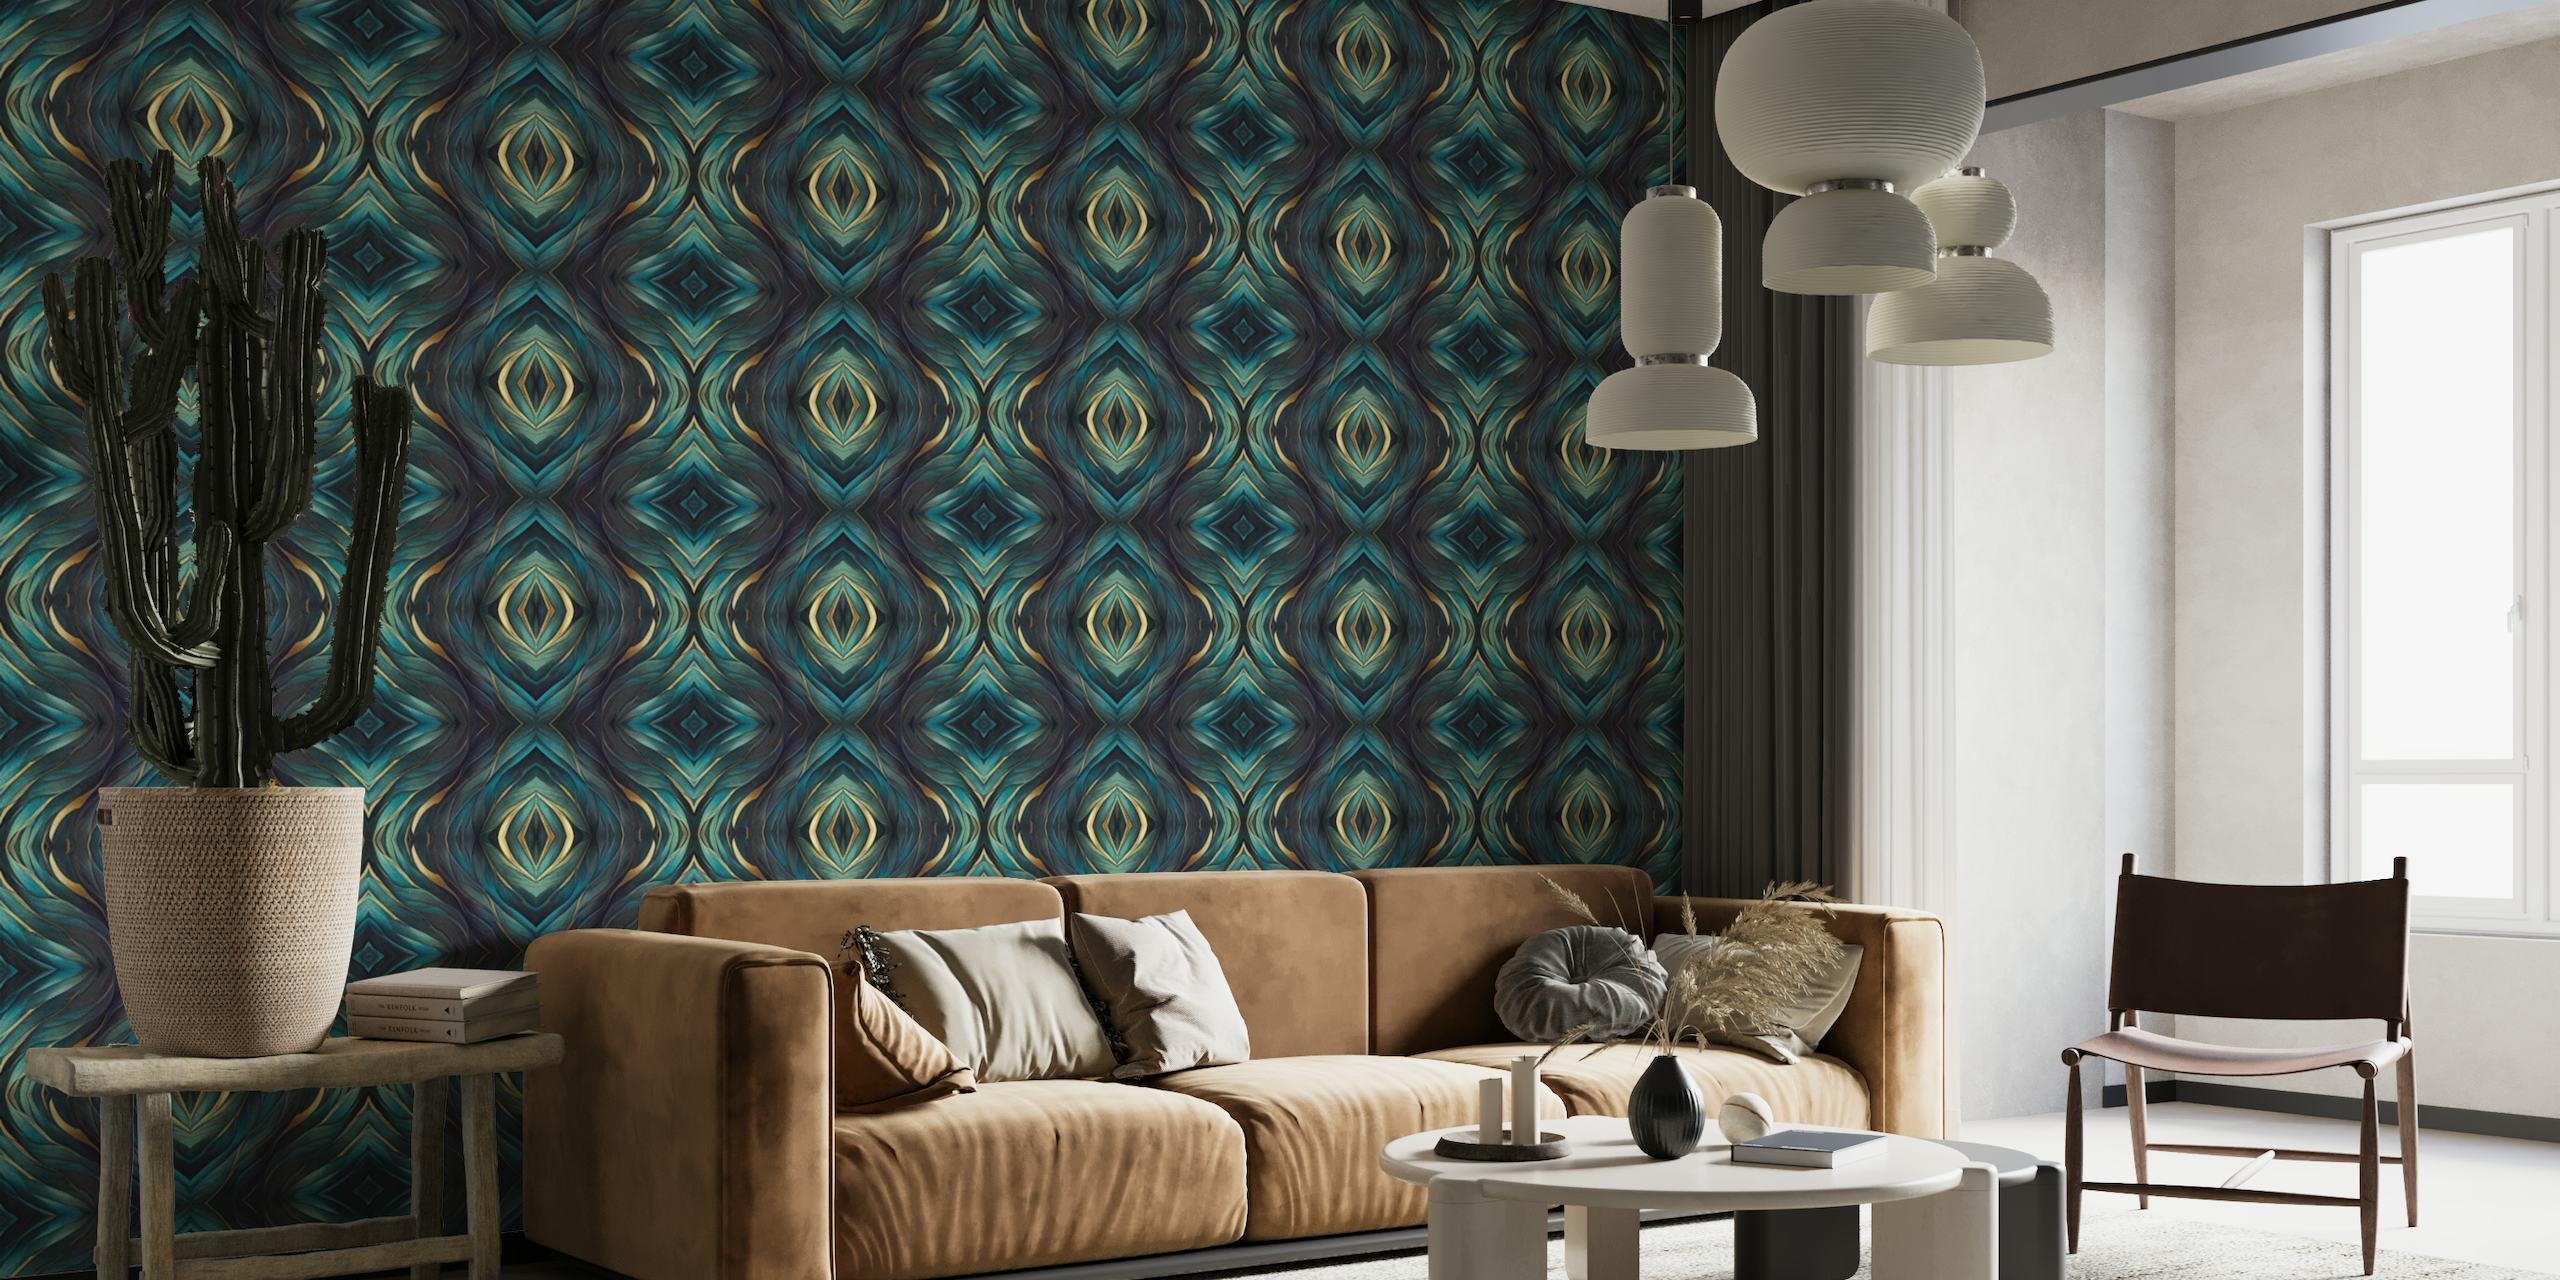 Artisanal Mediterranean Tile Design Teal Blue Gold tapety